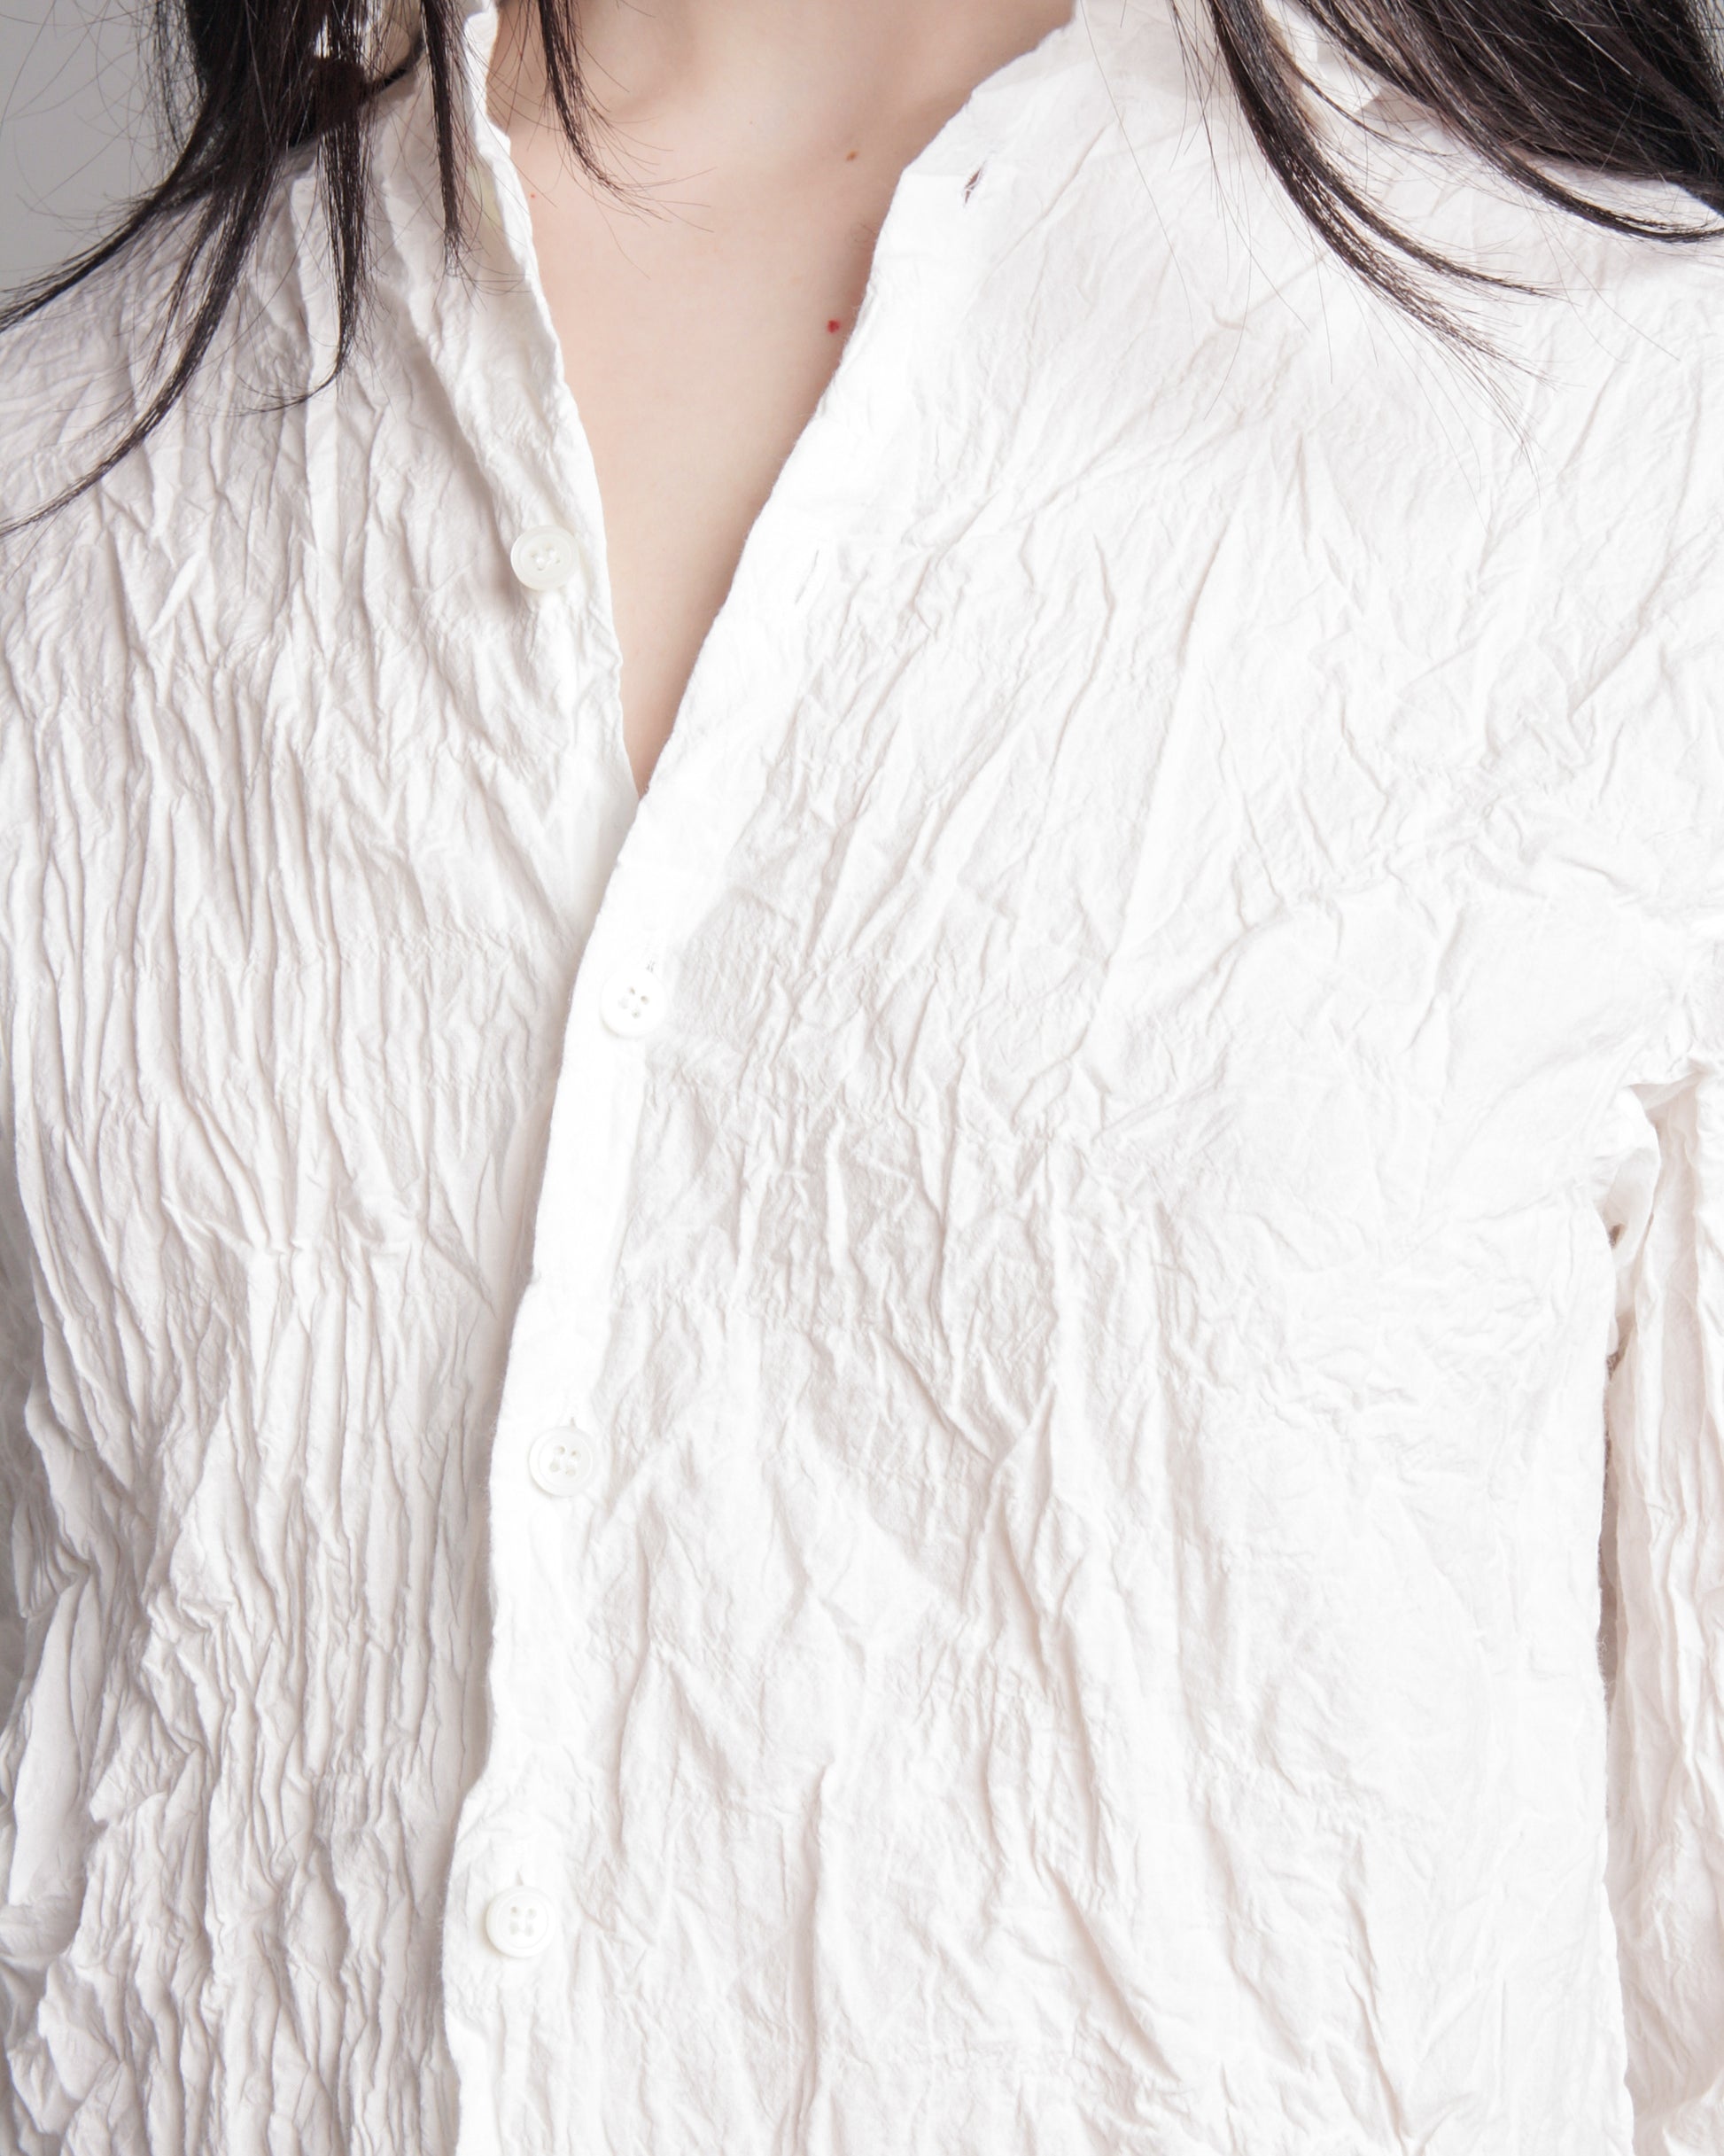 White Crinkle Shirt – Dilettante